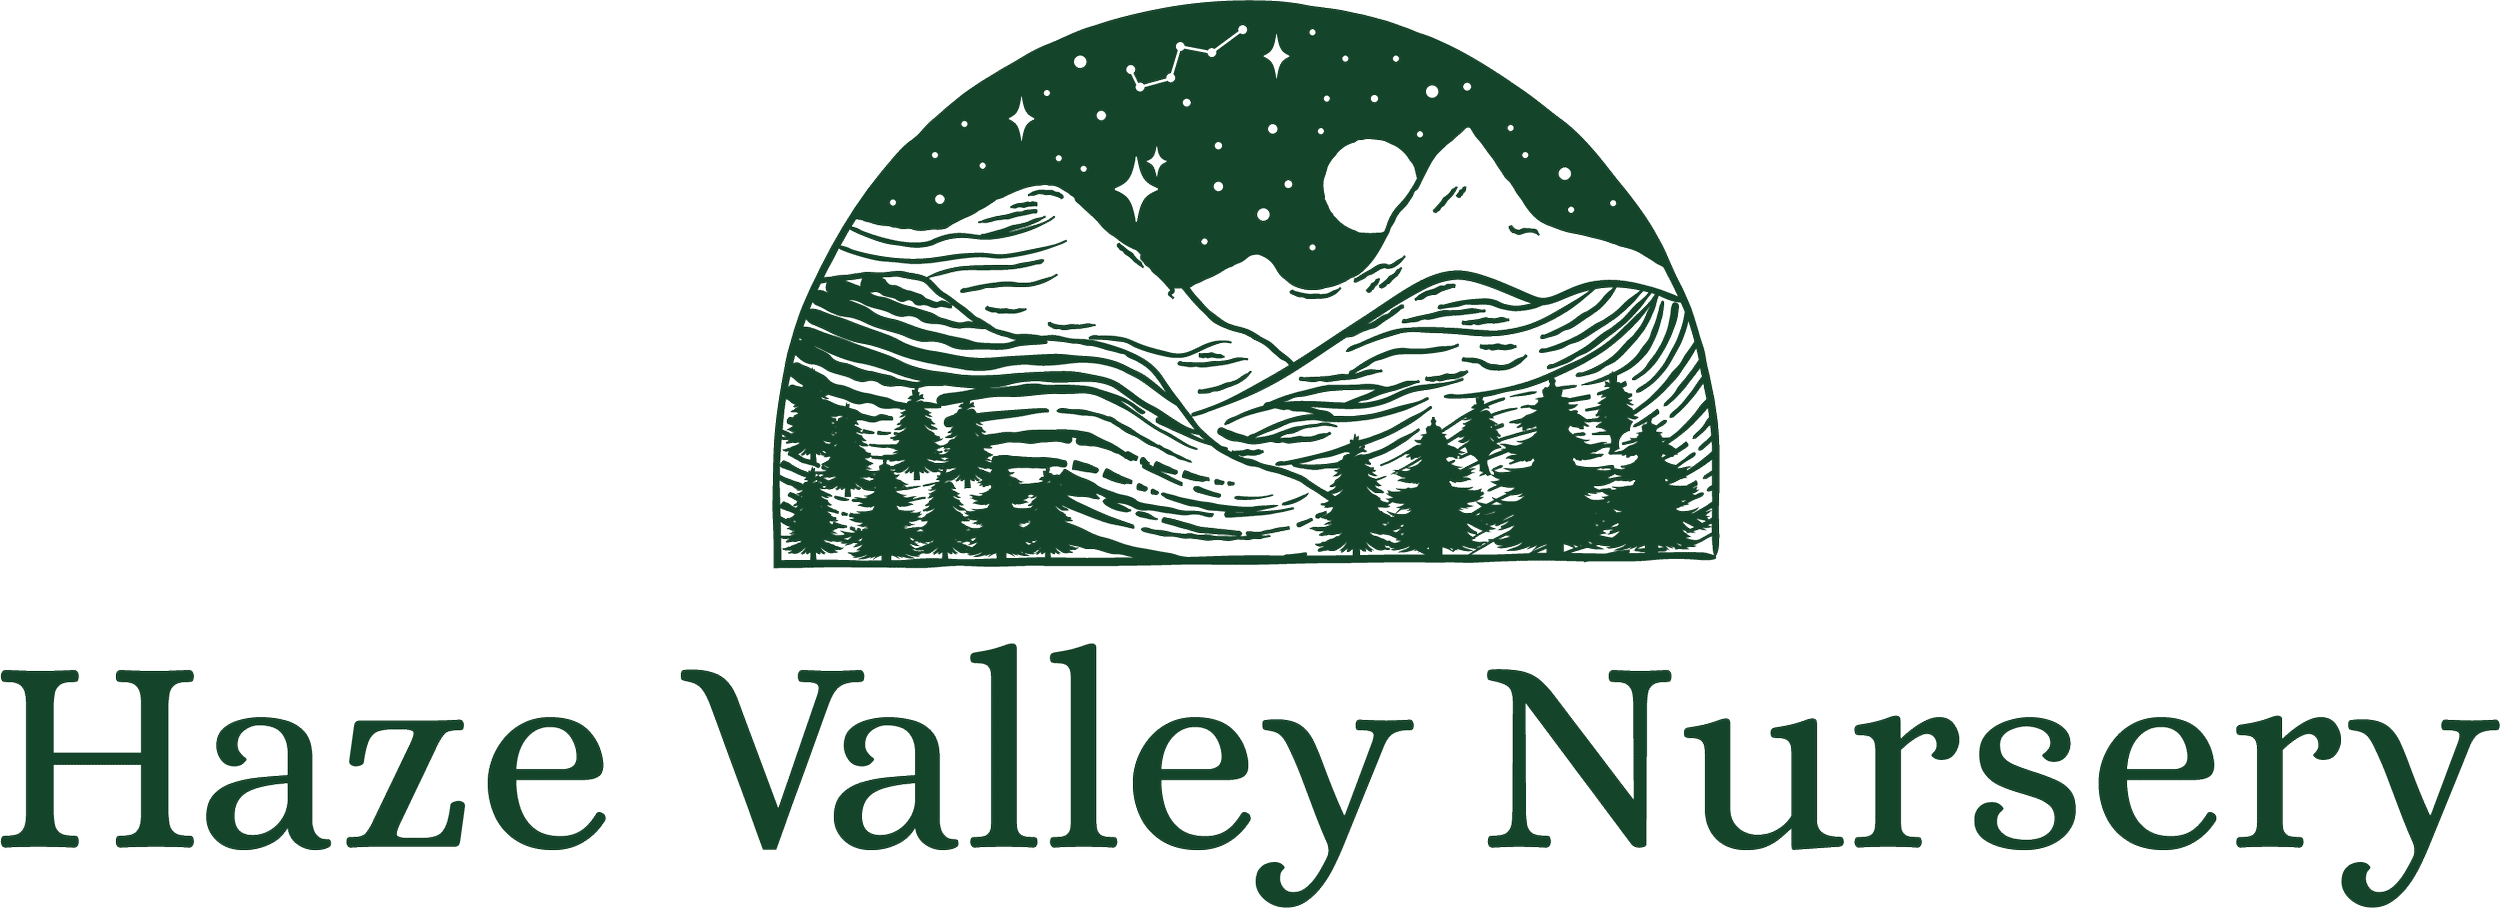 haze valley logo